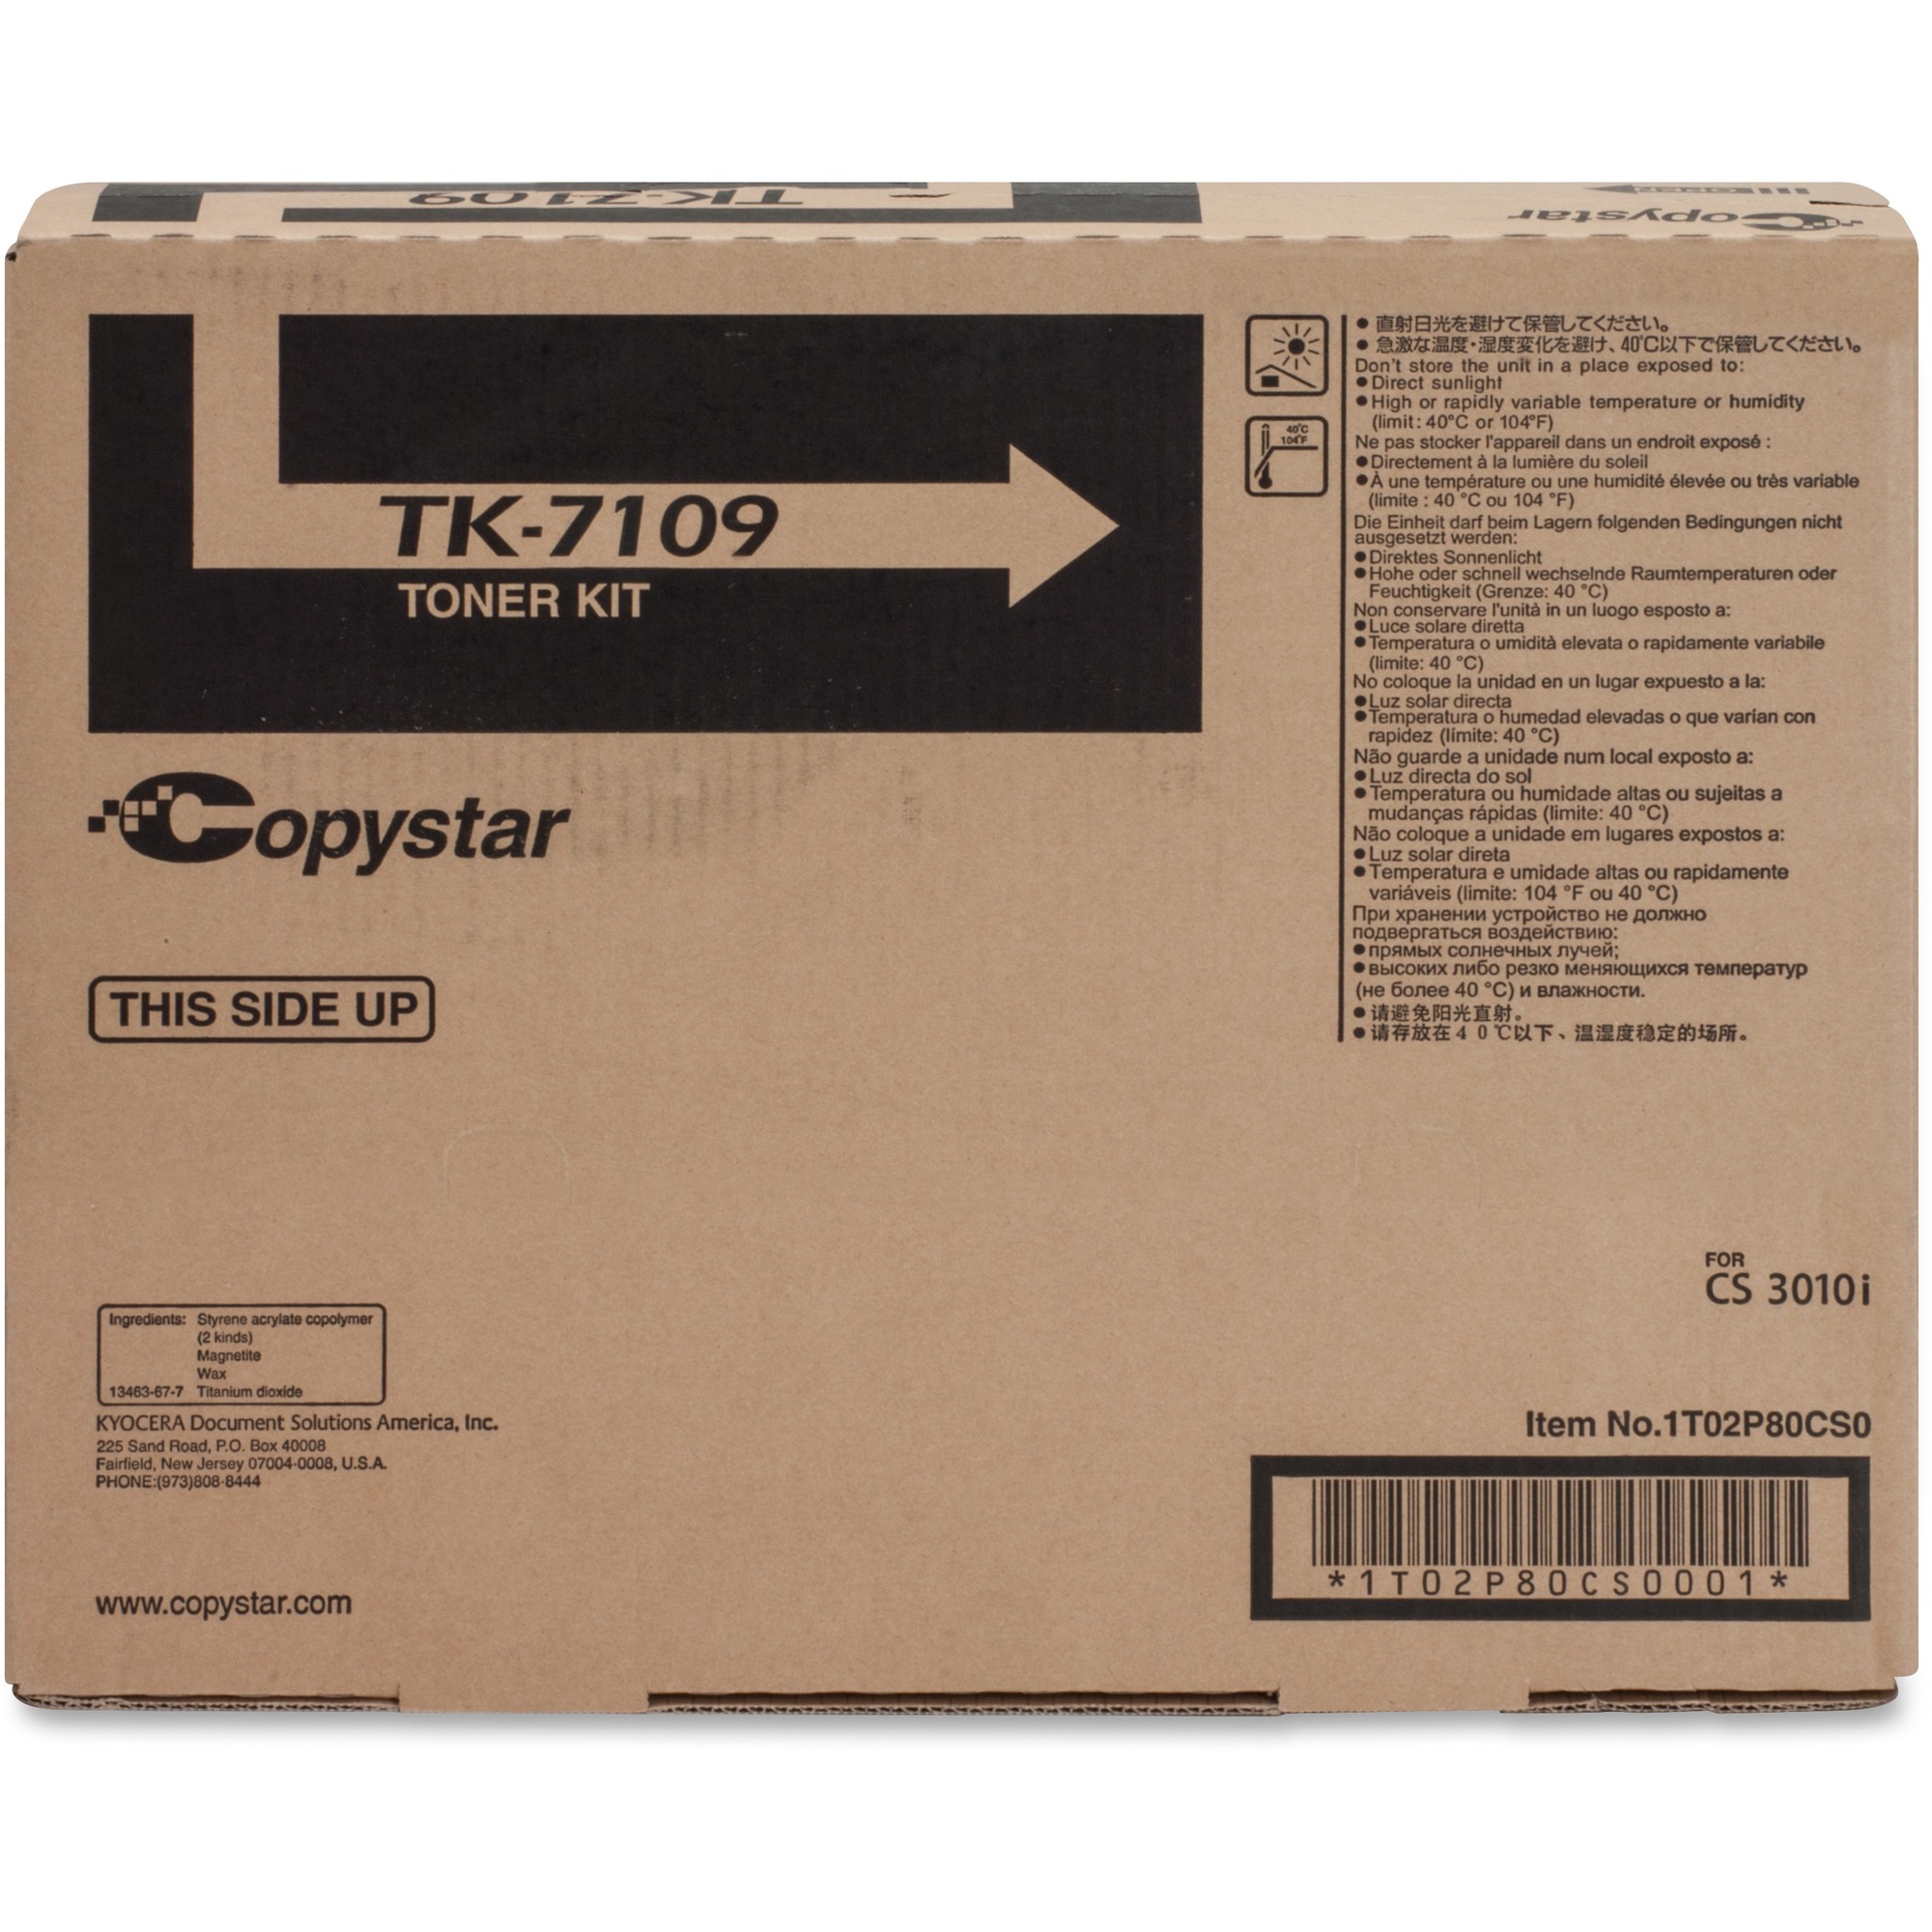 Copystar TK7109 Original Toner Cartridge